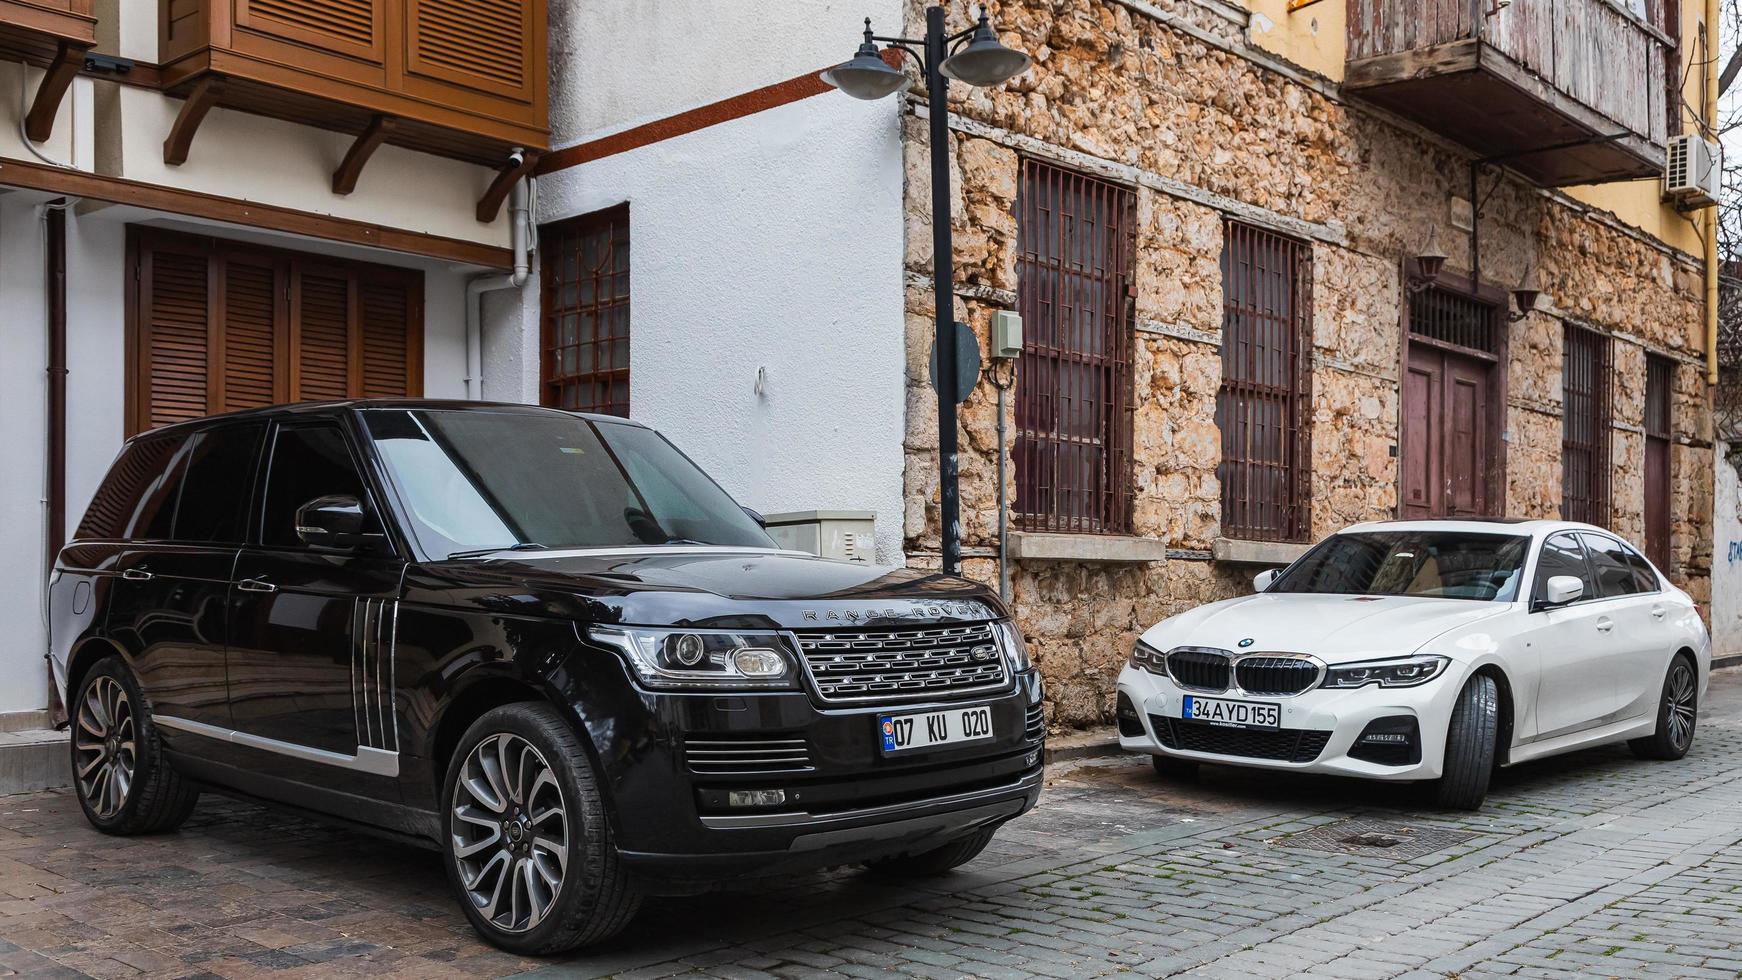 Seitentürkei 20. Februar 2022 schwarzer Land Rover Range Rover und bmw 5er werden an einem warmen Tag auf der Straße geparkt foto